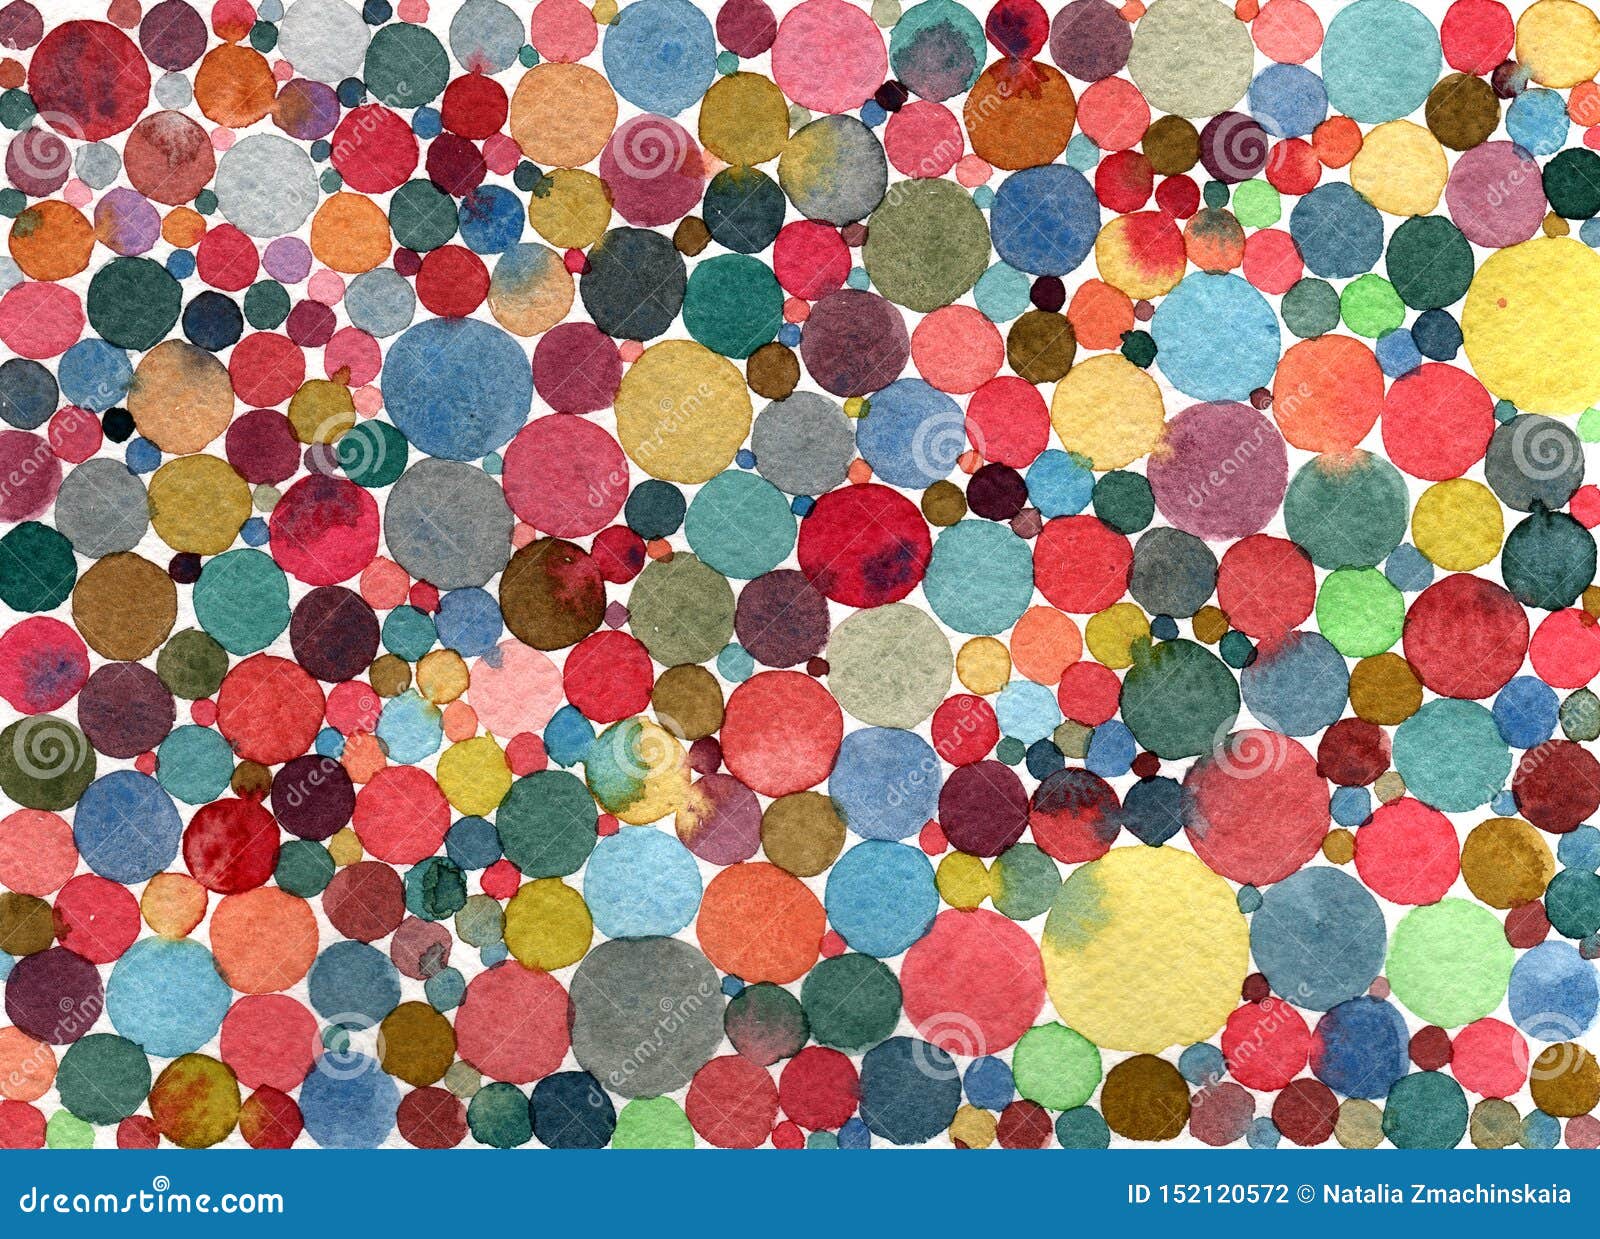 abstract watercolor polka dots/circles multicolored pattern